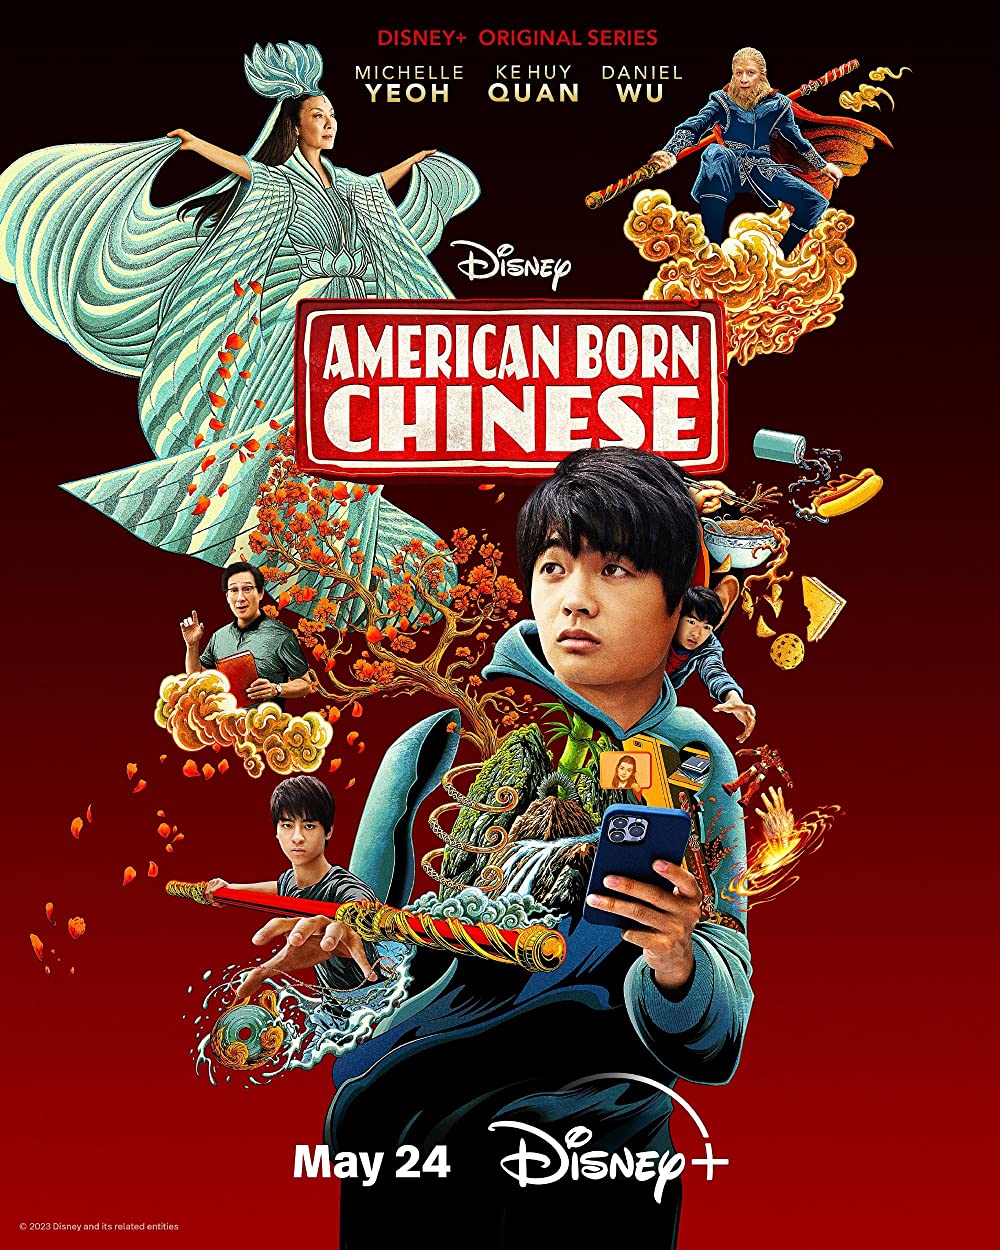 【ABC大话西游/American Born Chinese】[第一季][中英双字]更新第4集